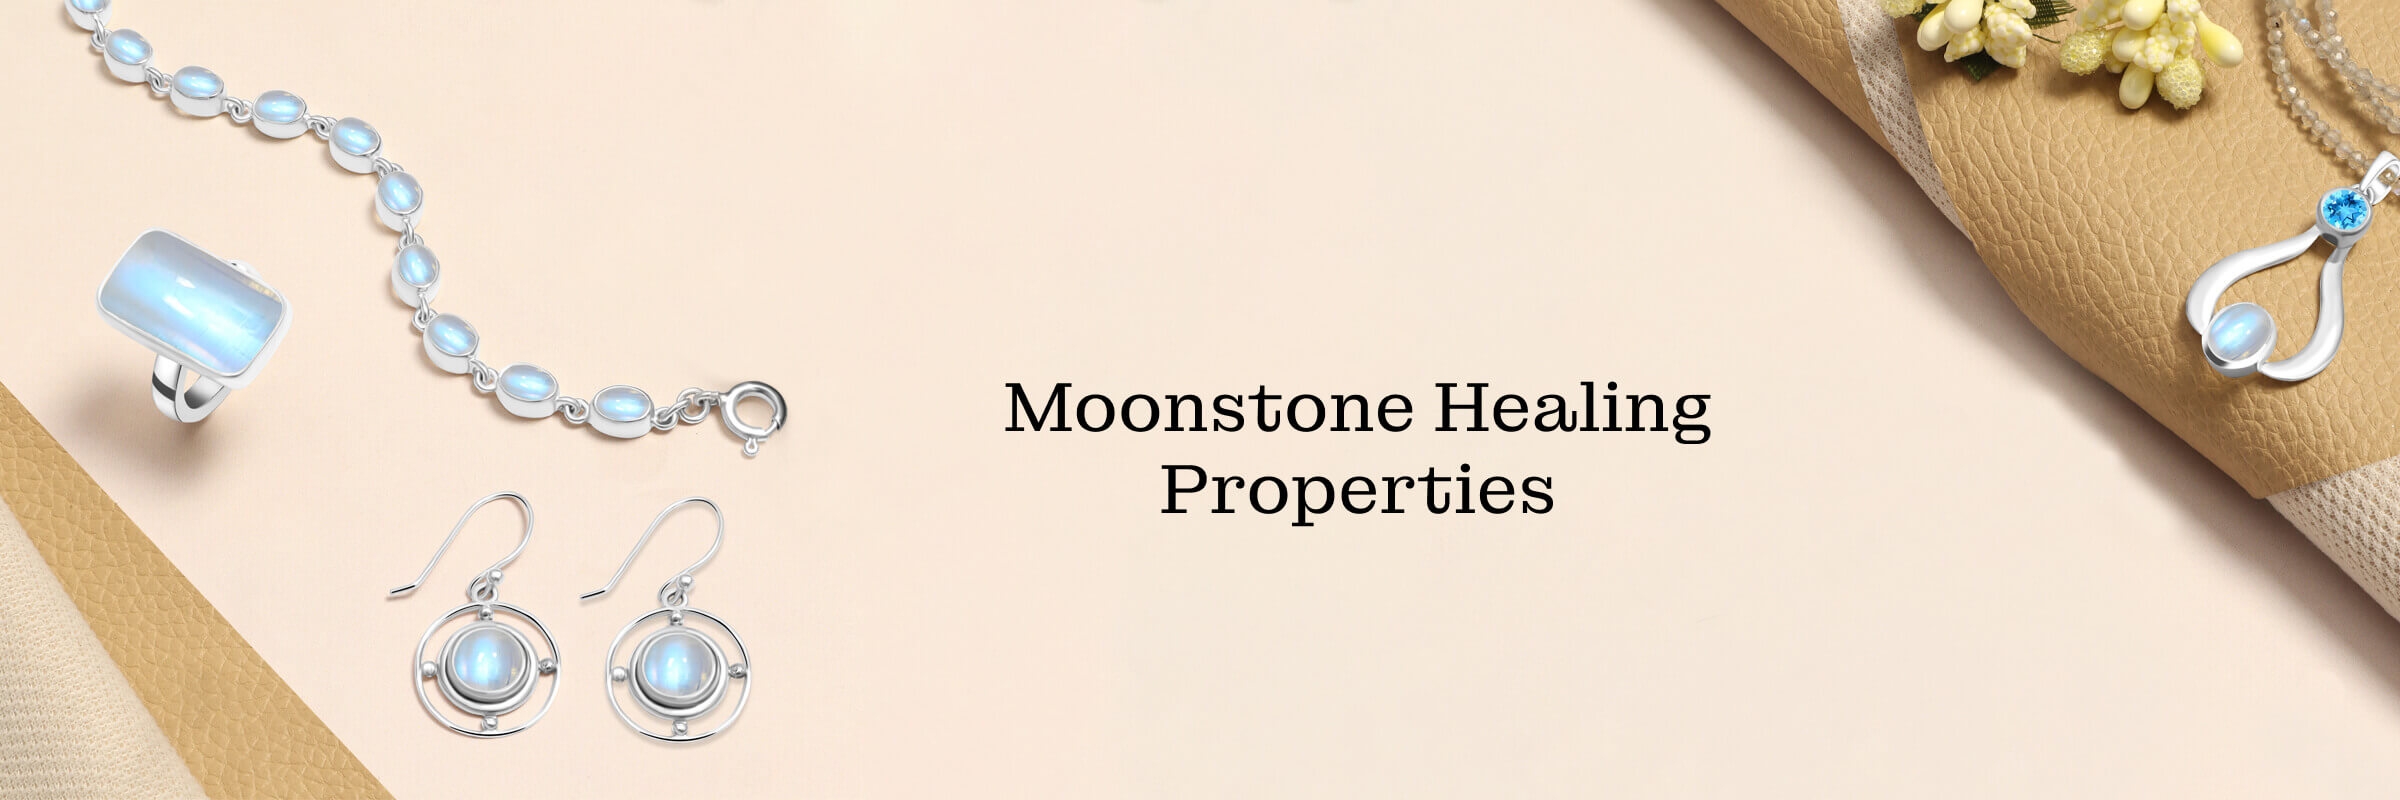 Moonstone Healing properties